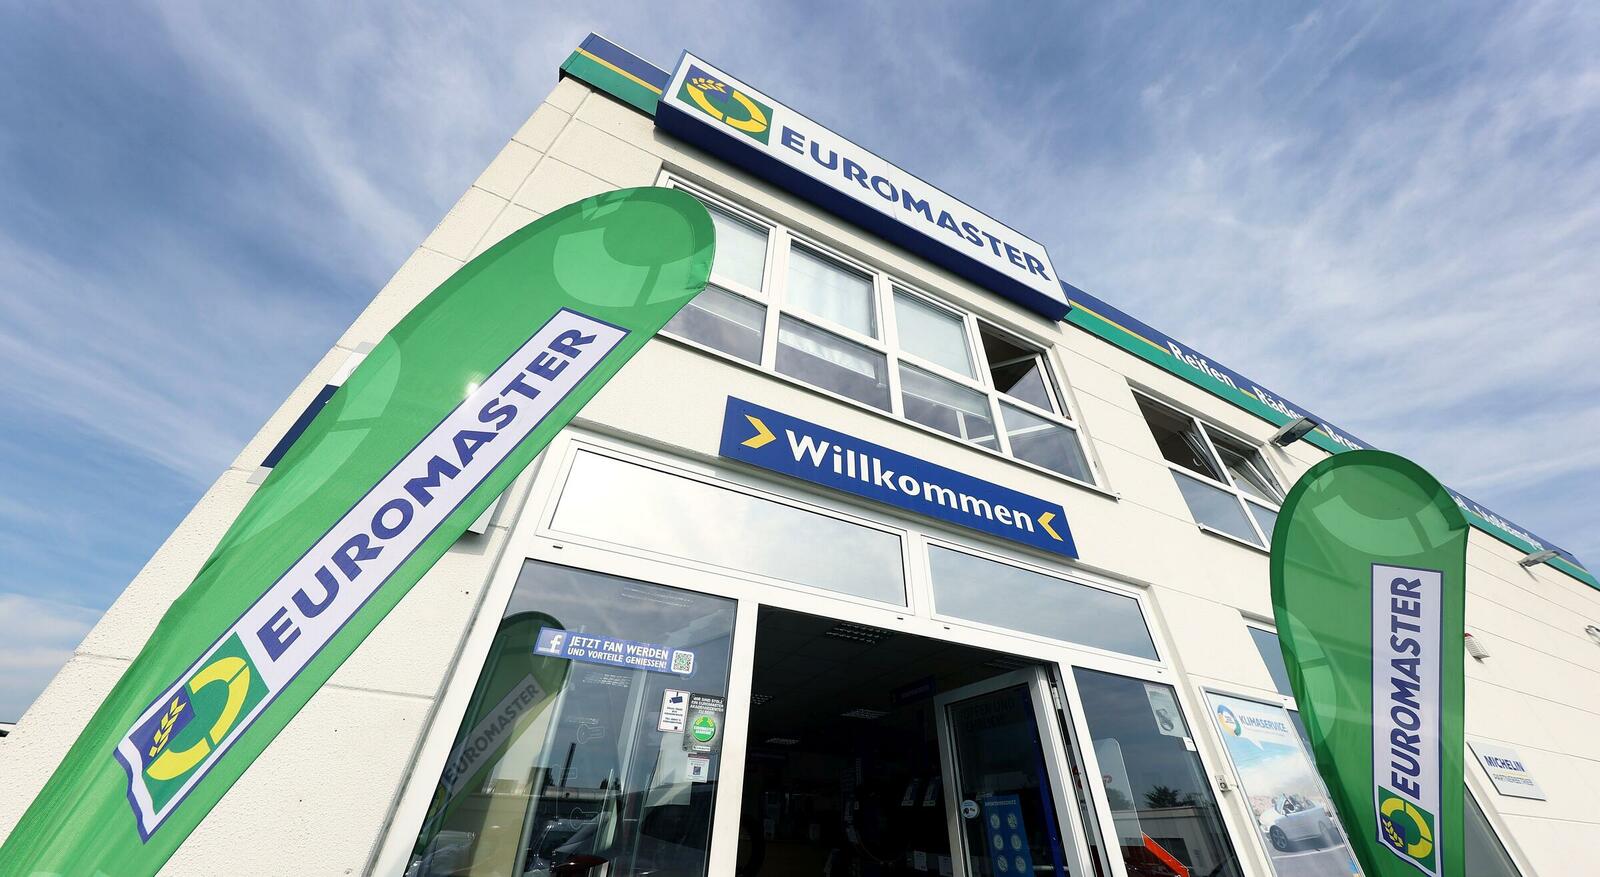 Euromaster ist eine hundertprozentige Tochtergesellschaft der Michelin Group.